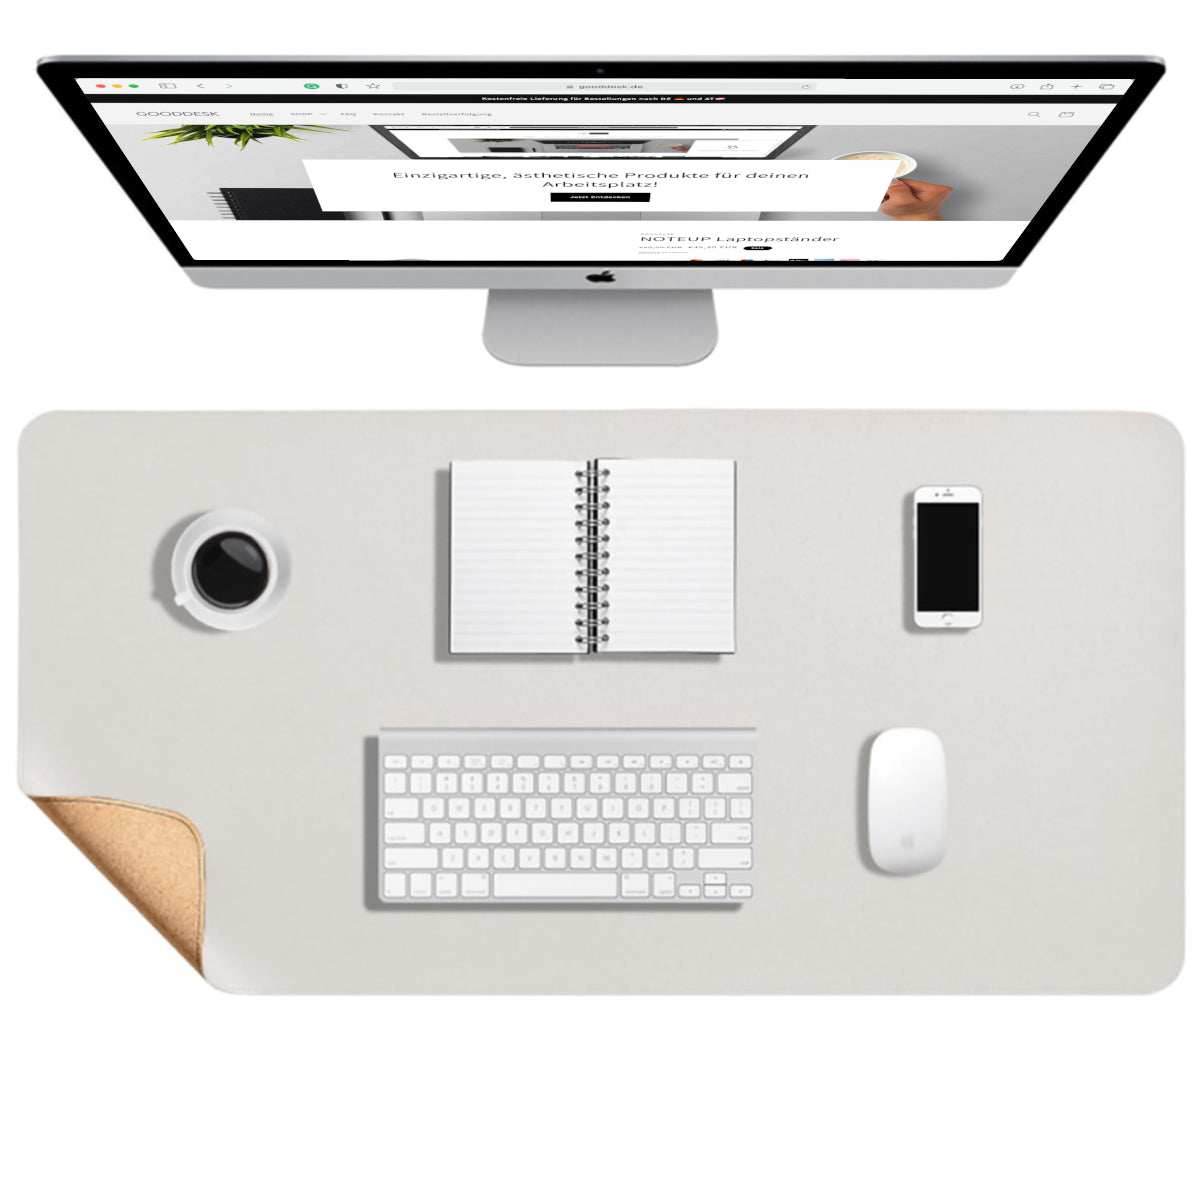 Korkmatte Kork Schreibtischunterlage nachhaltig Eingangsbild shoppen gooddesk grau Wählbild